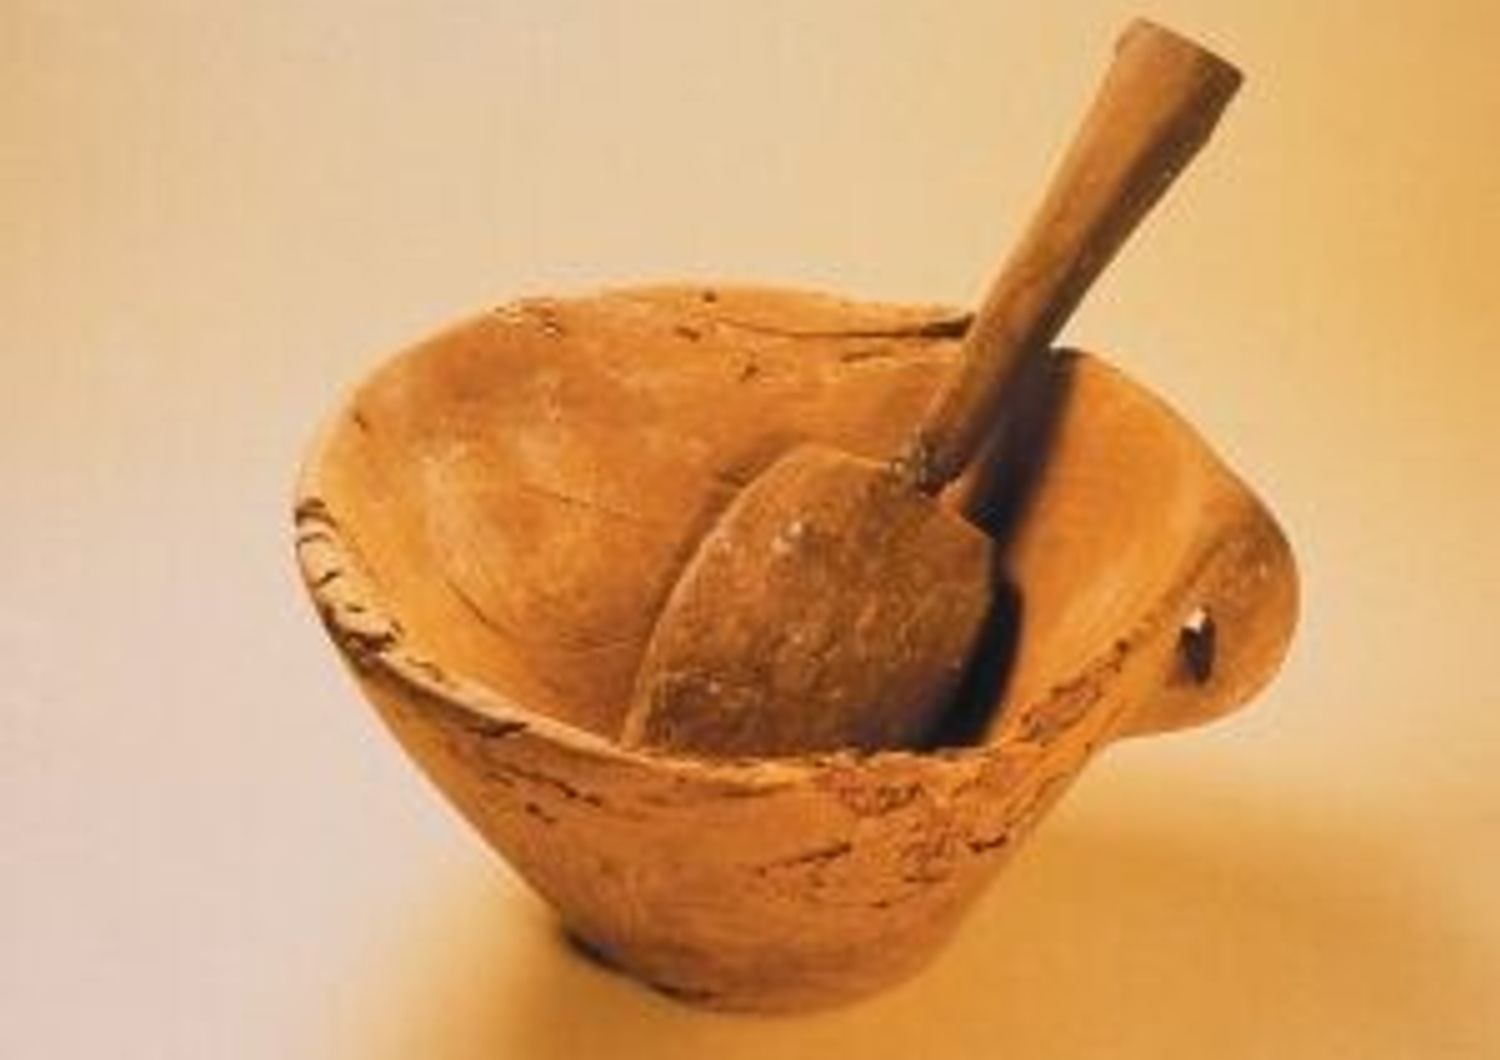 Ciotola e cucchiaio di legno trovati nel tesoro con i contenitori di capelli umani.&nbsp;